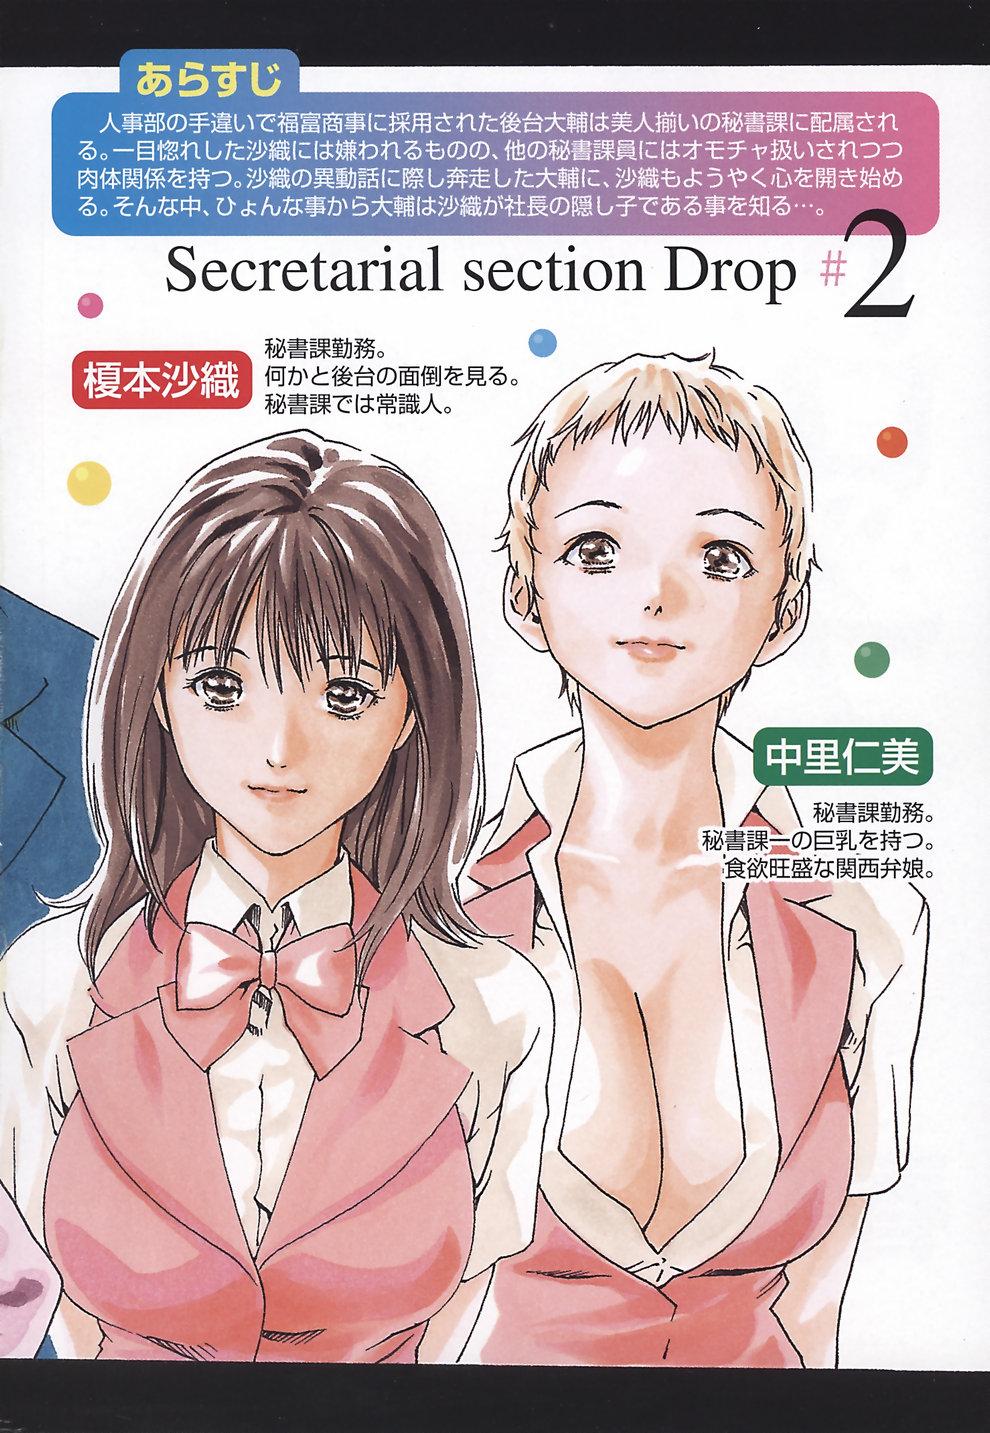 Oral Hishoka Drop - Secretarial Section Drop 2 Penis - Page 10